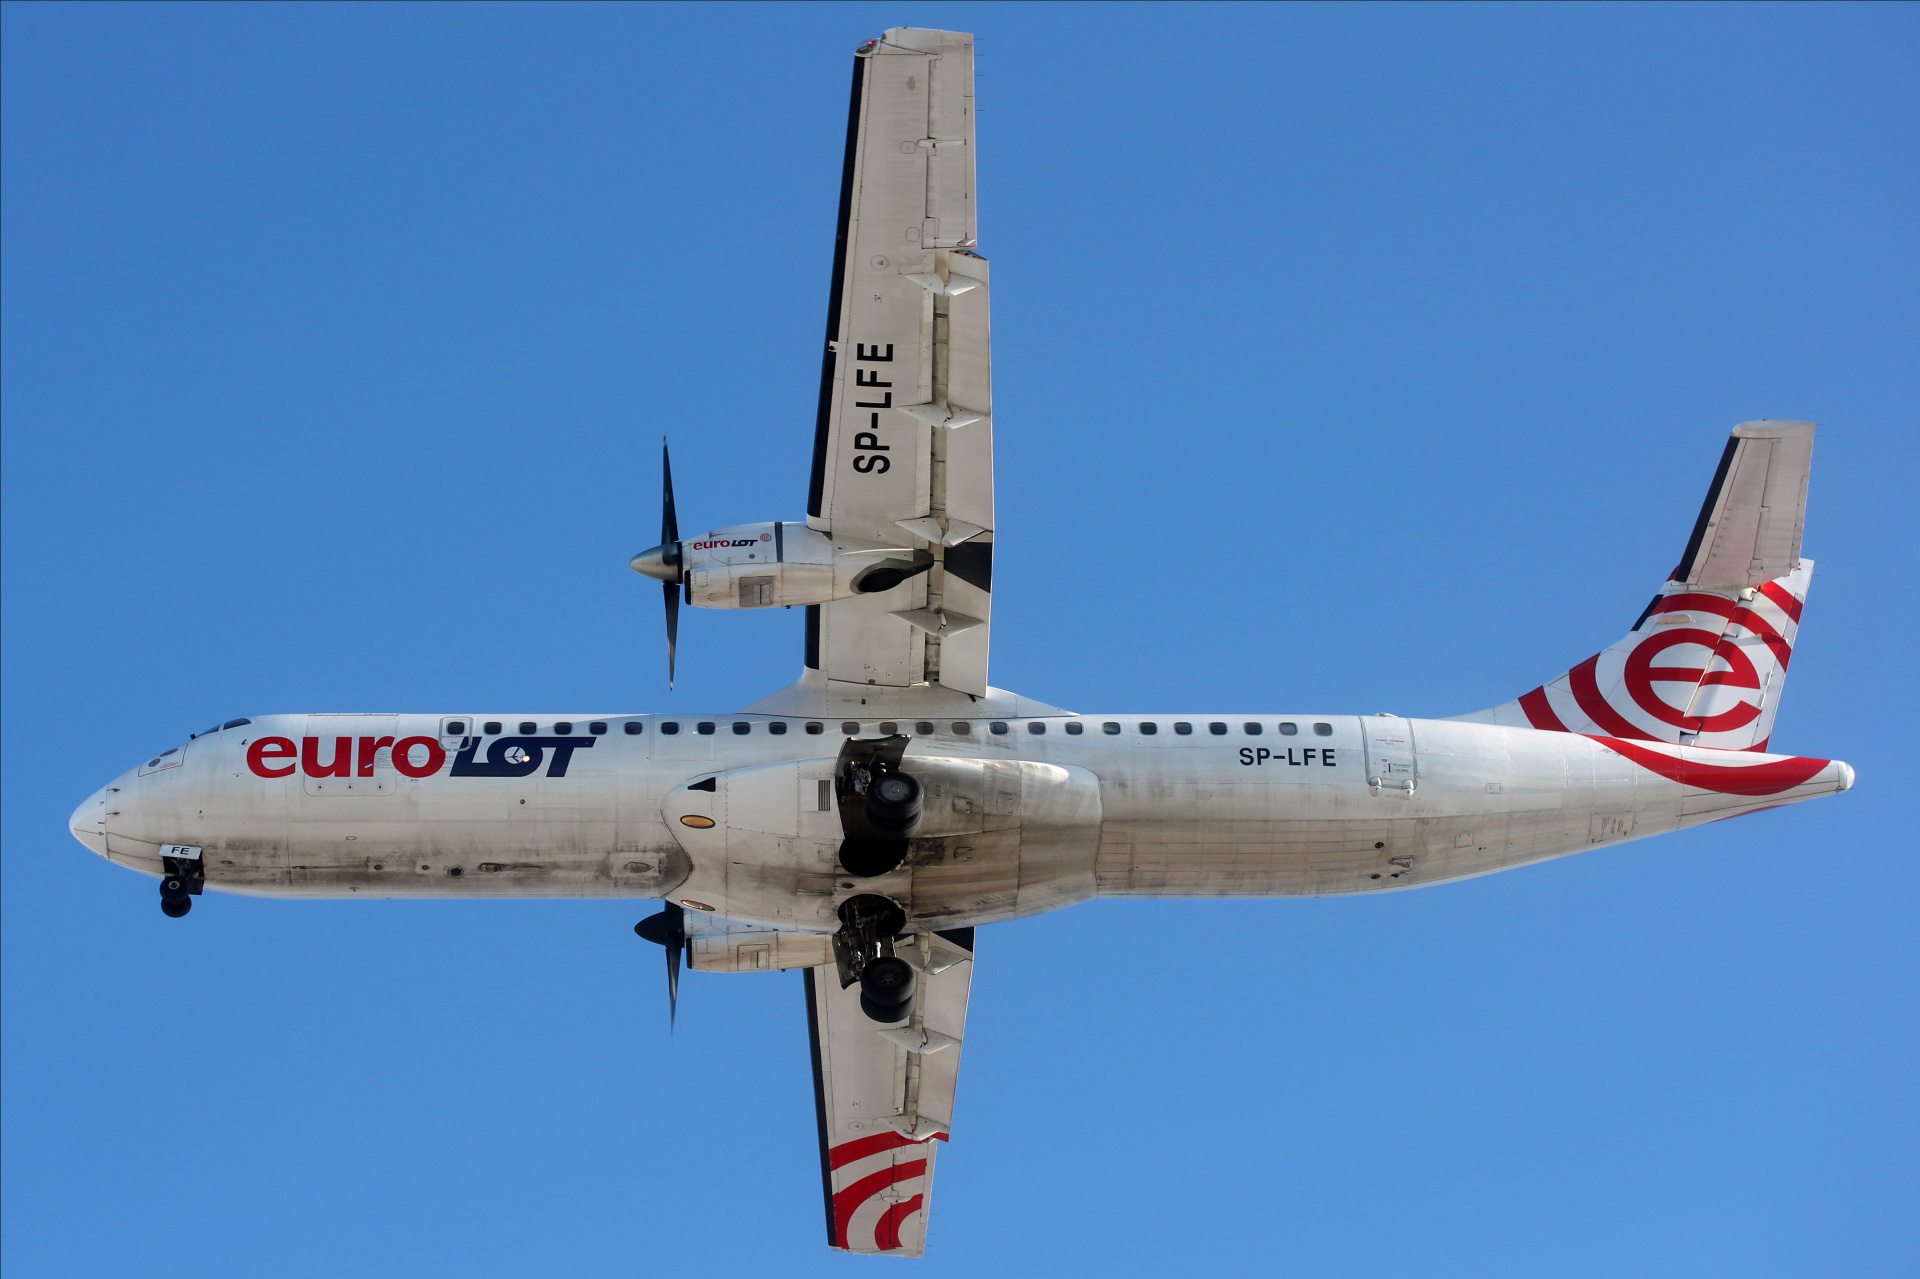 SP-LFE (Aircraft » EPWA Spotting » ATR 72 » EuroLOT)